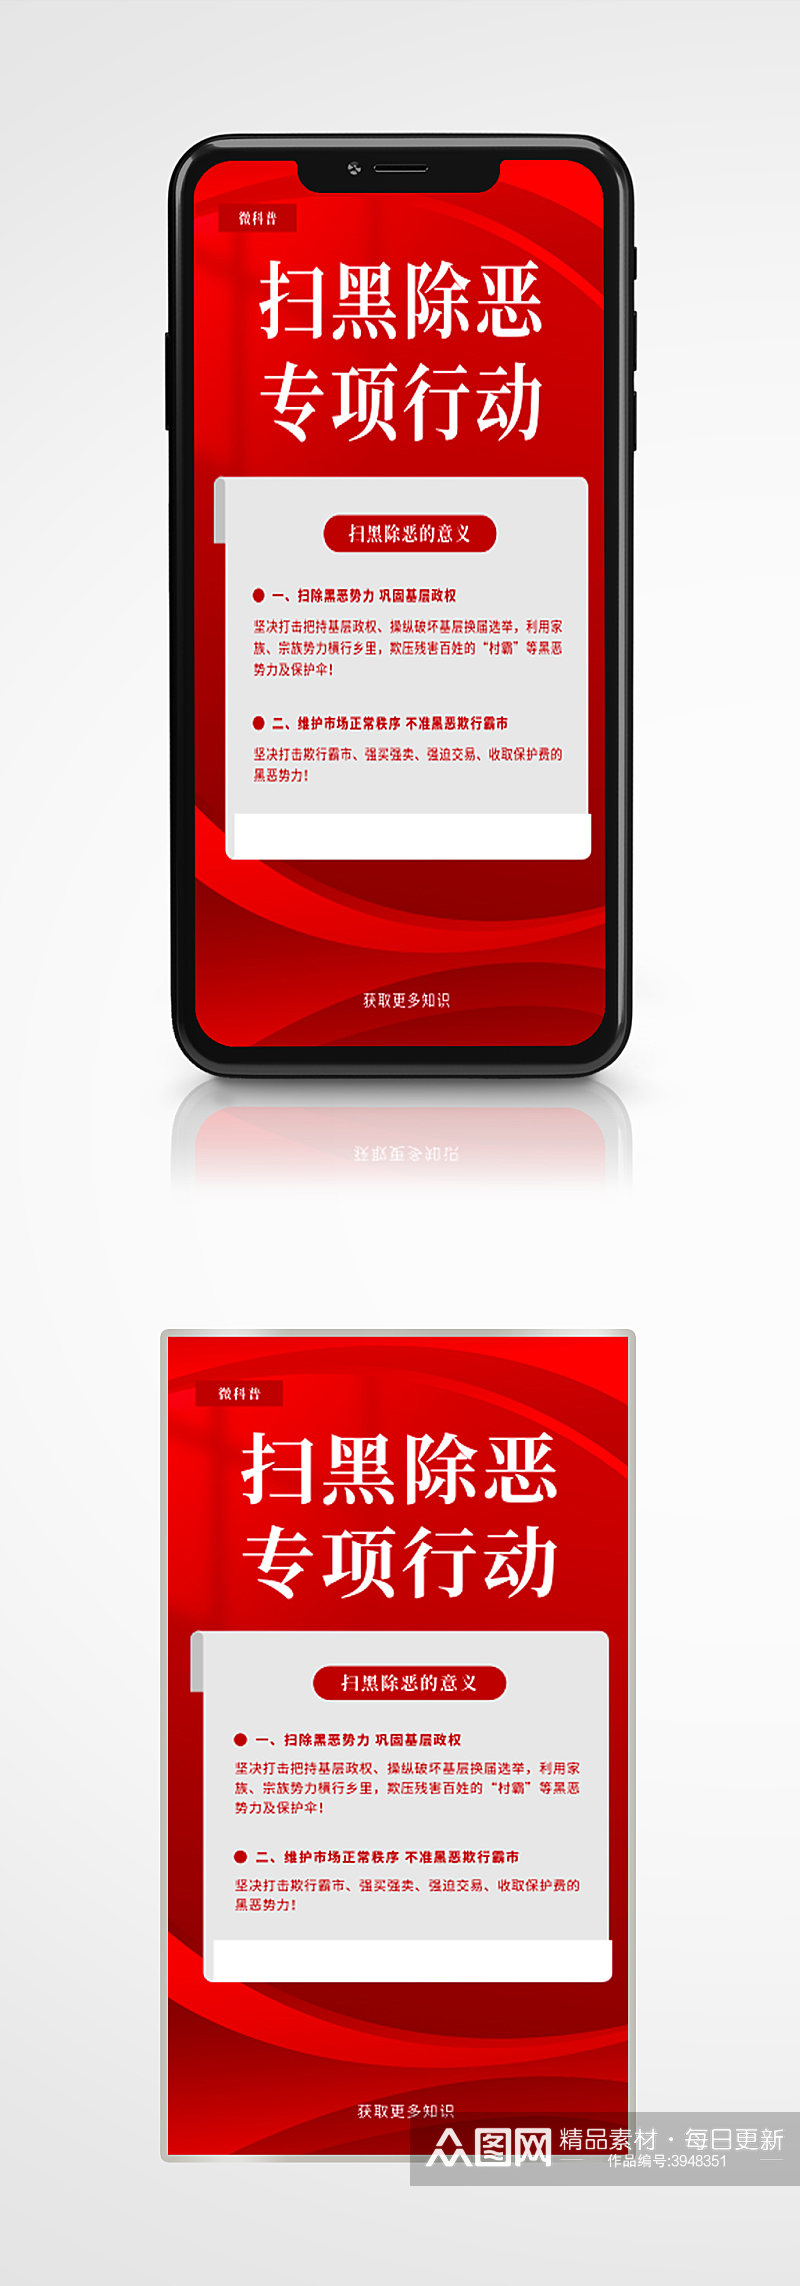 扫黑除恶专项行动宣传红色简约手机海报素材